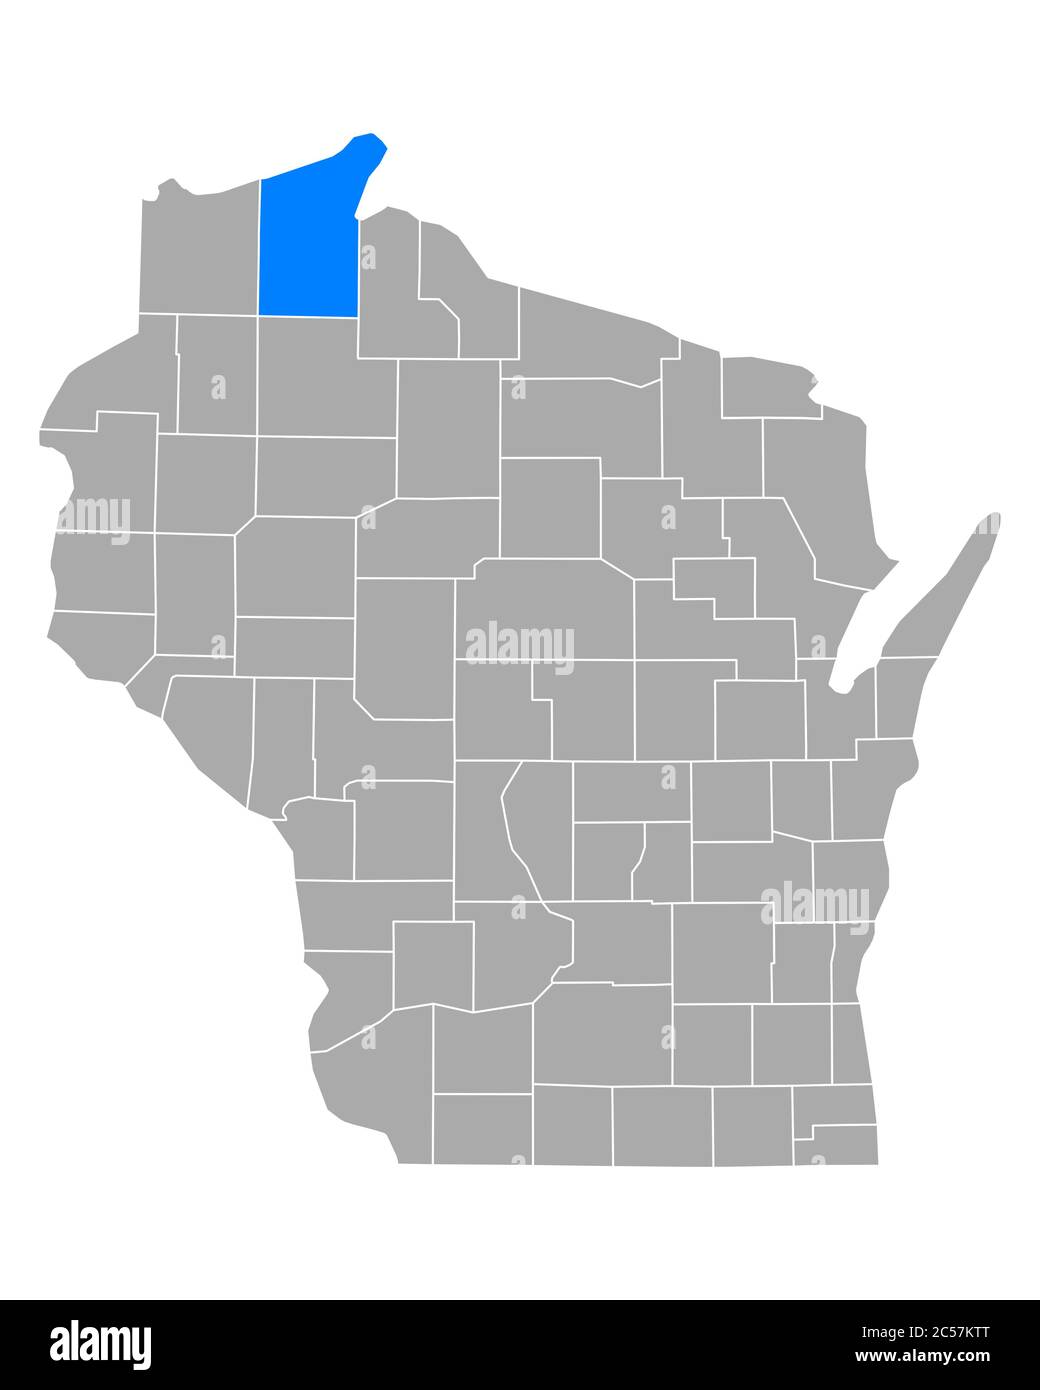 Bayfield sulla mappa di Wisconsin Foto Stock